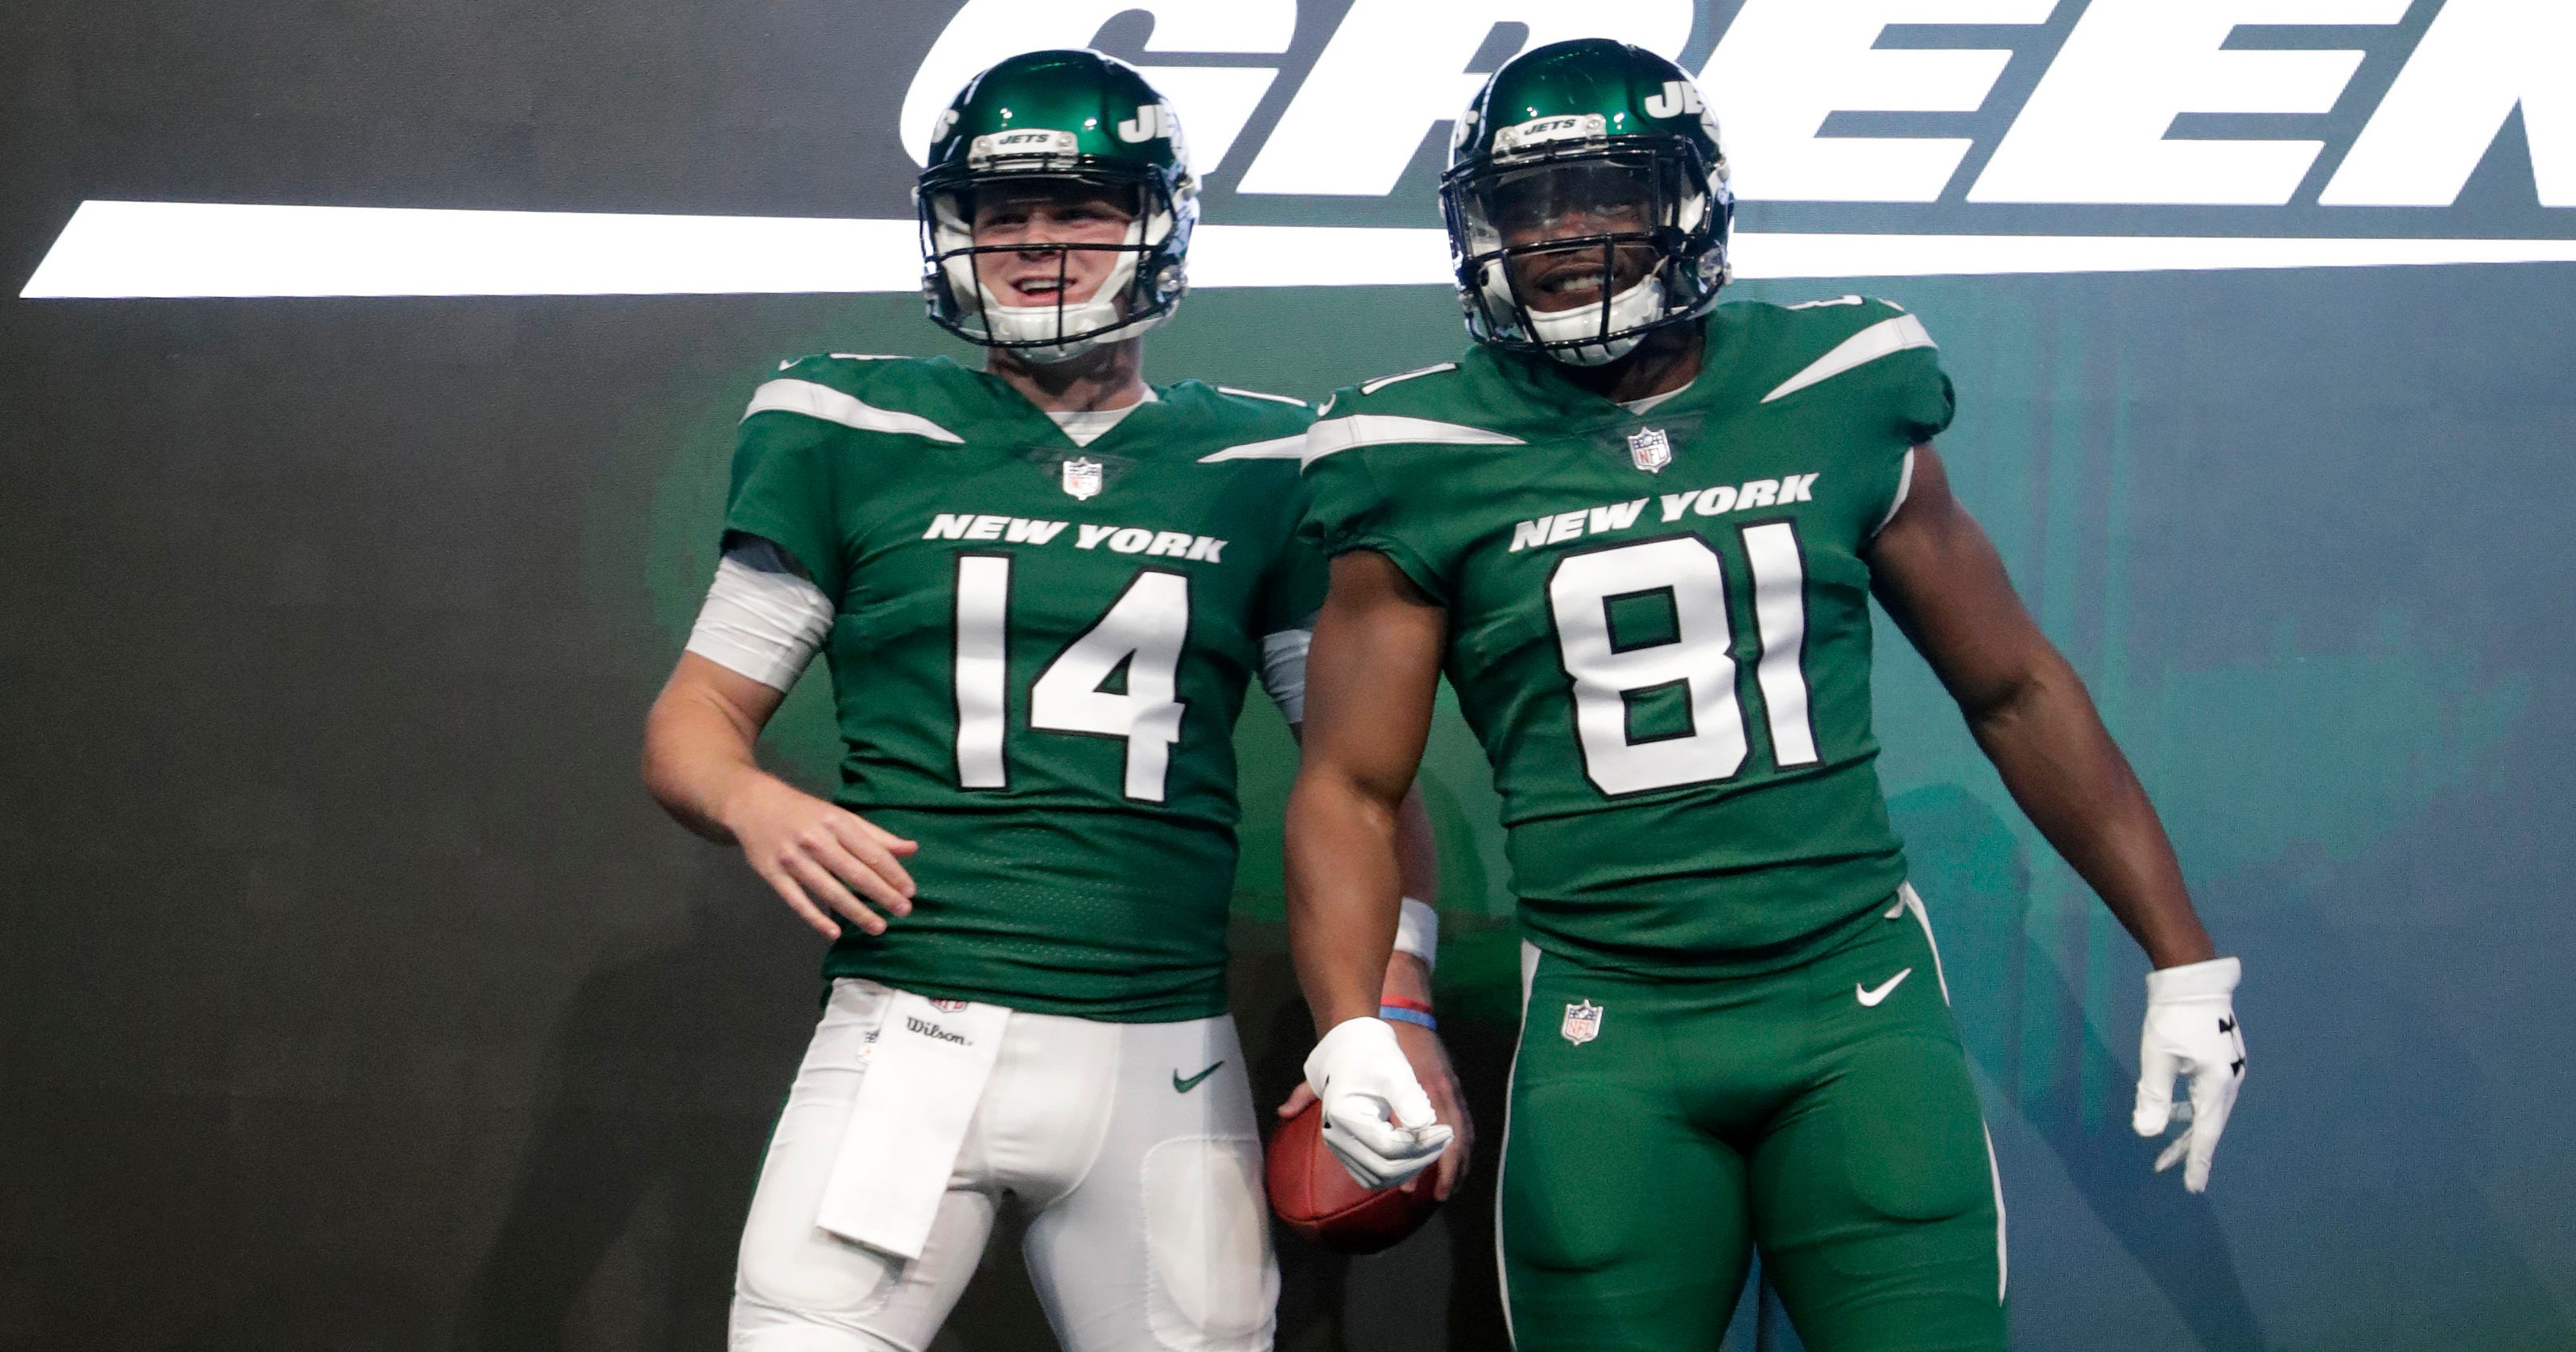 Jets uniforms photos Team unveils newlook jerseys, helmets, pants